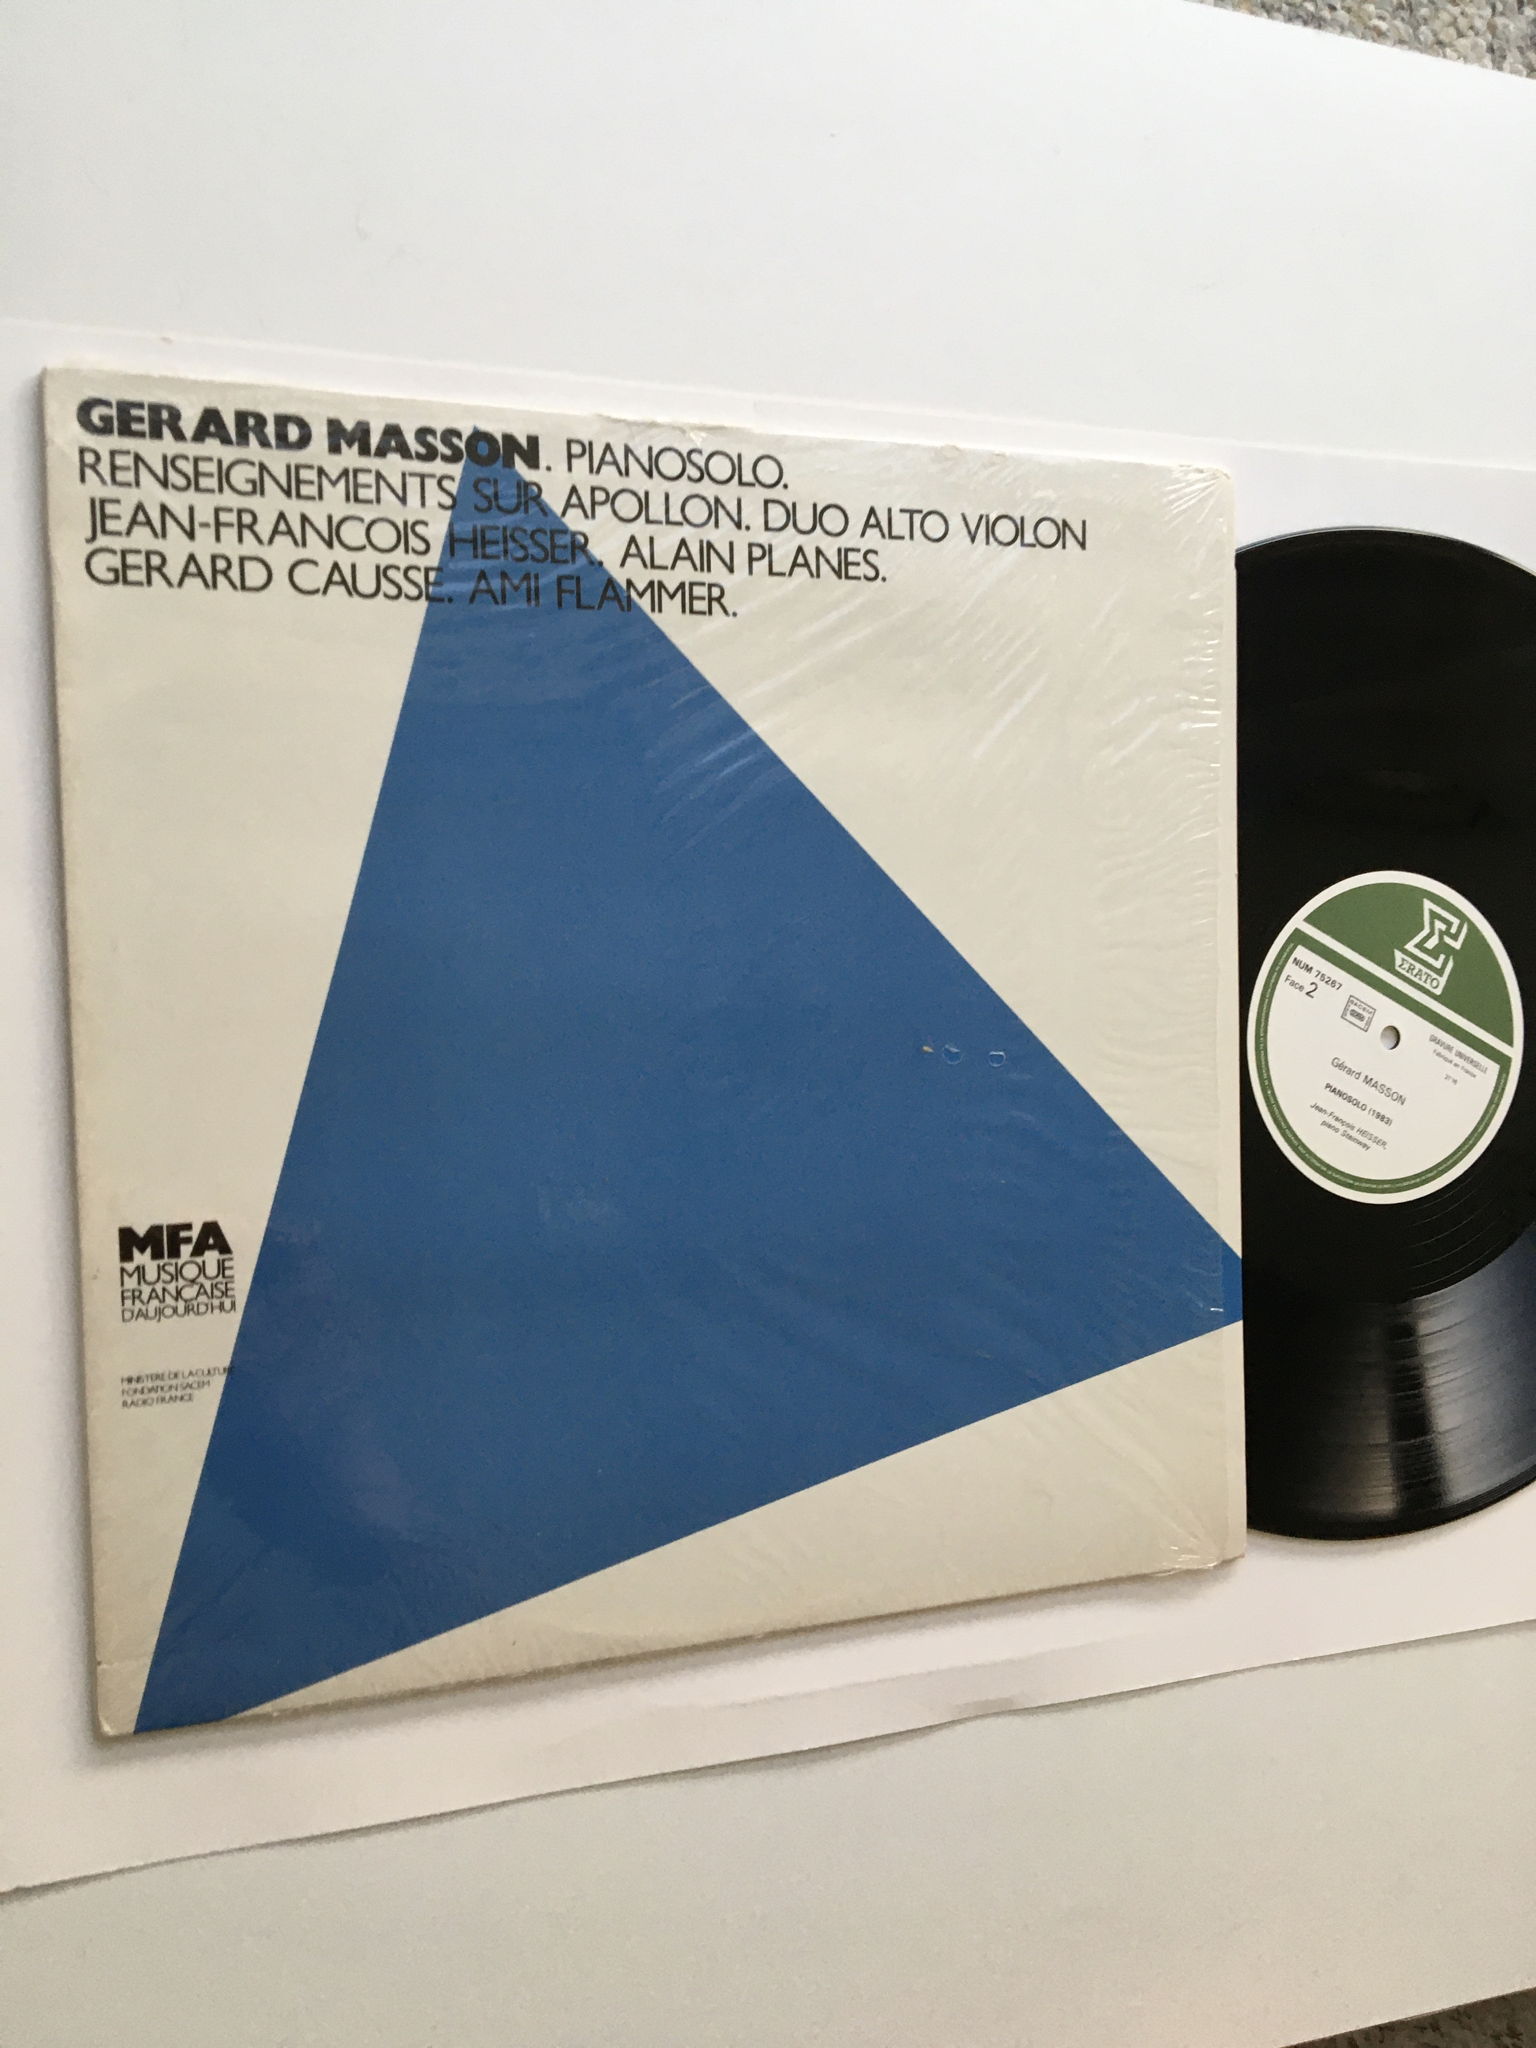 Erato Gerard Masson Lp record France 1986 Piano solo vi...